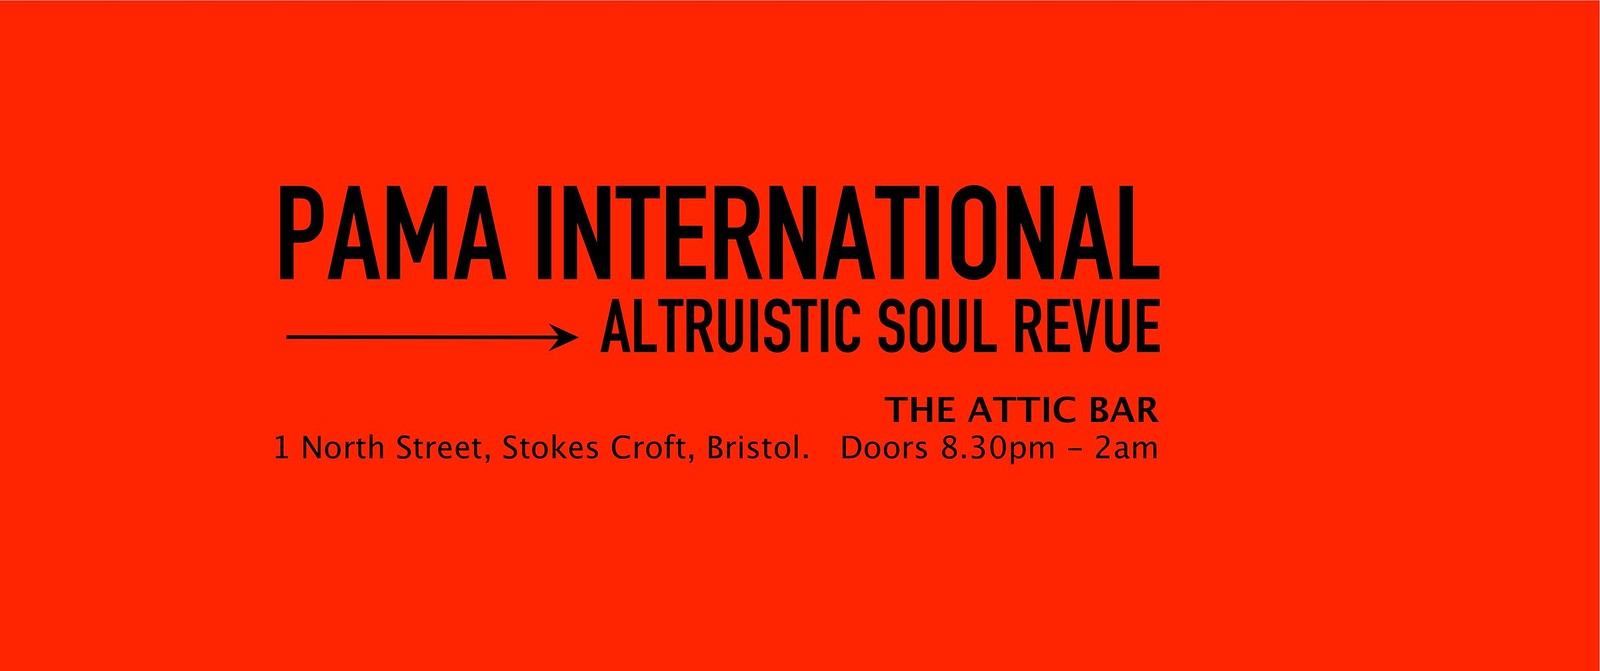 Altruistic Soul Revue at The Attic Bar